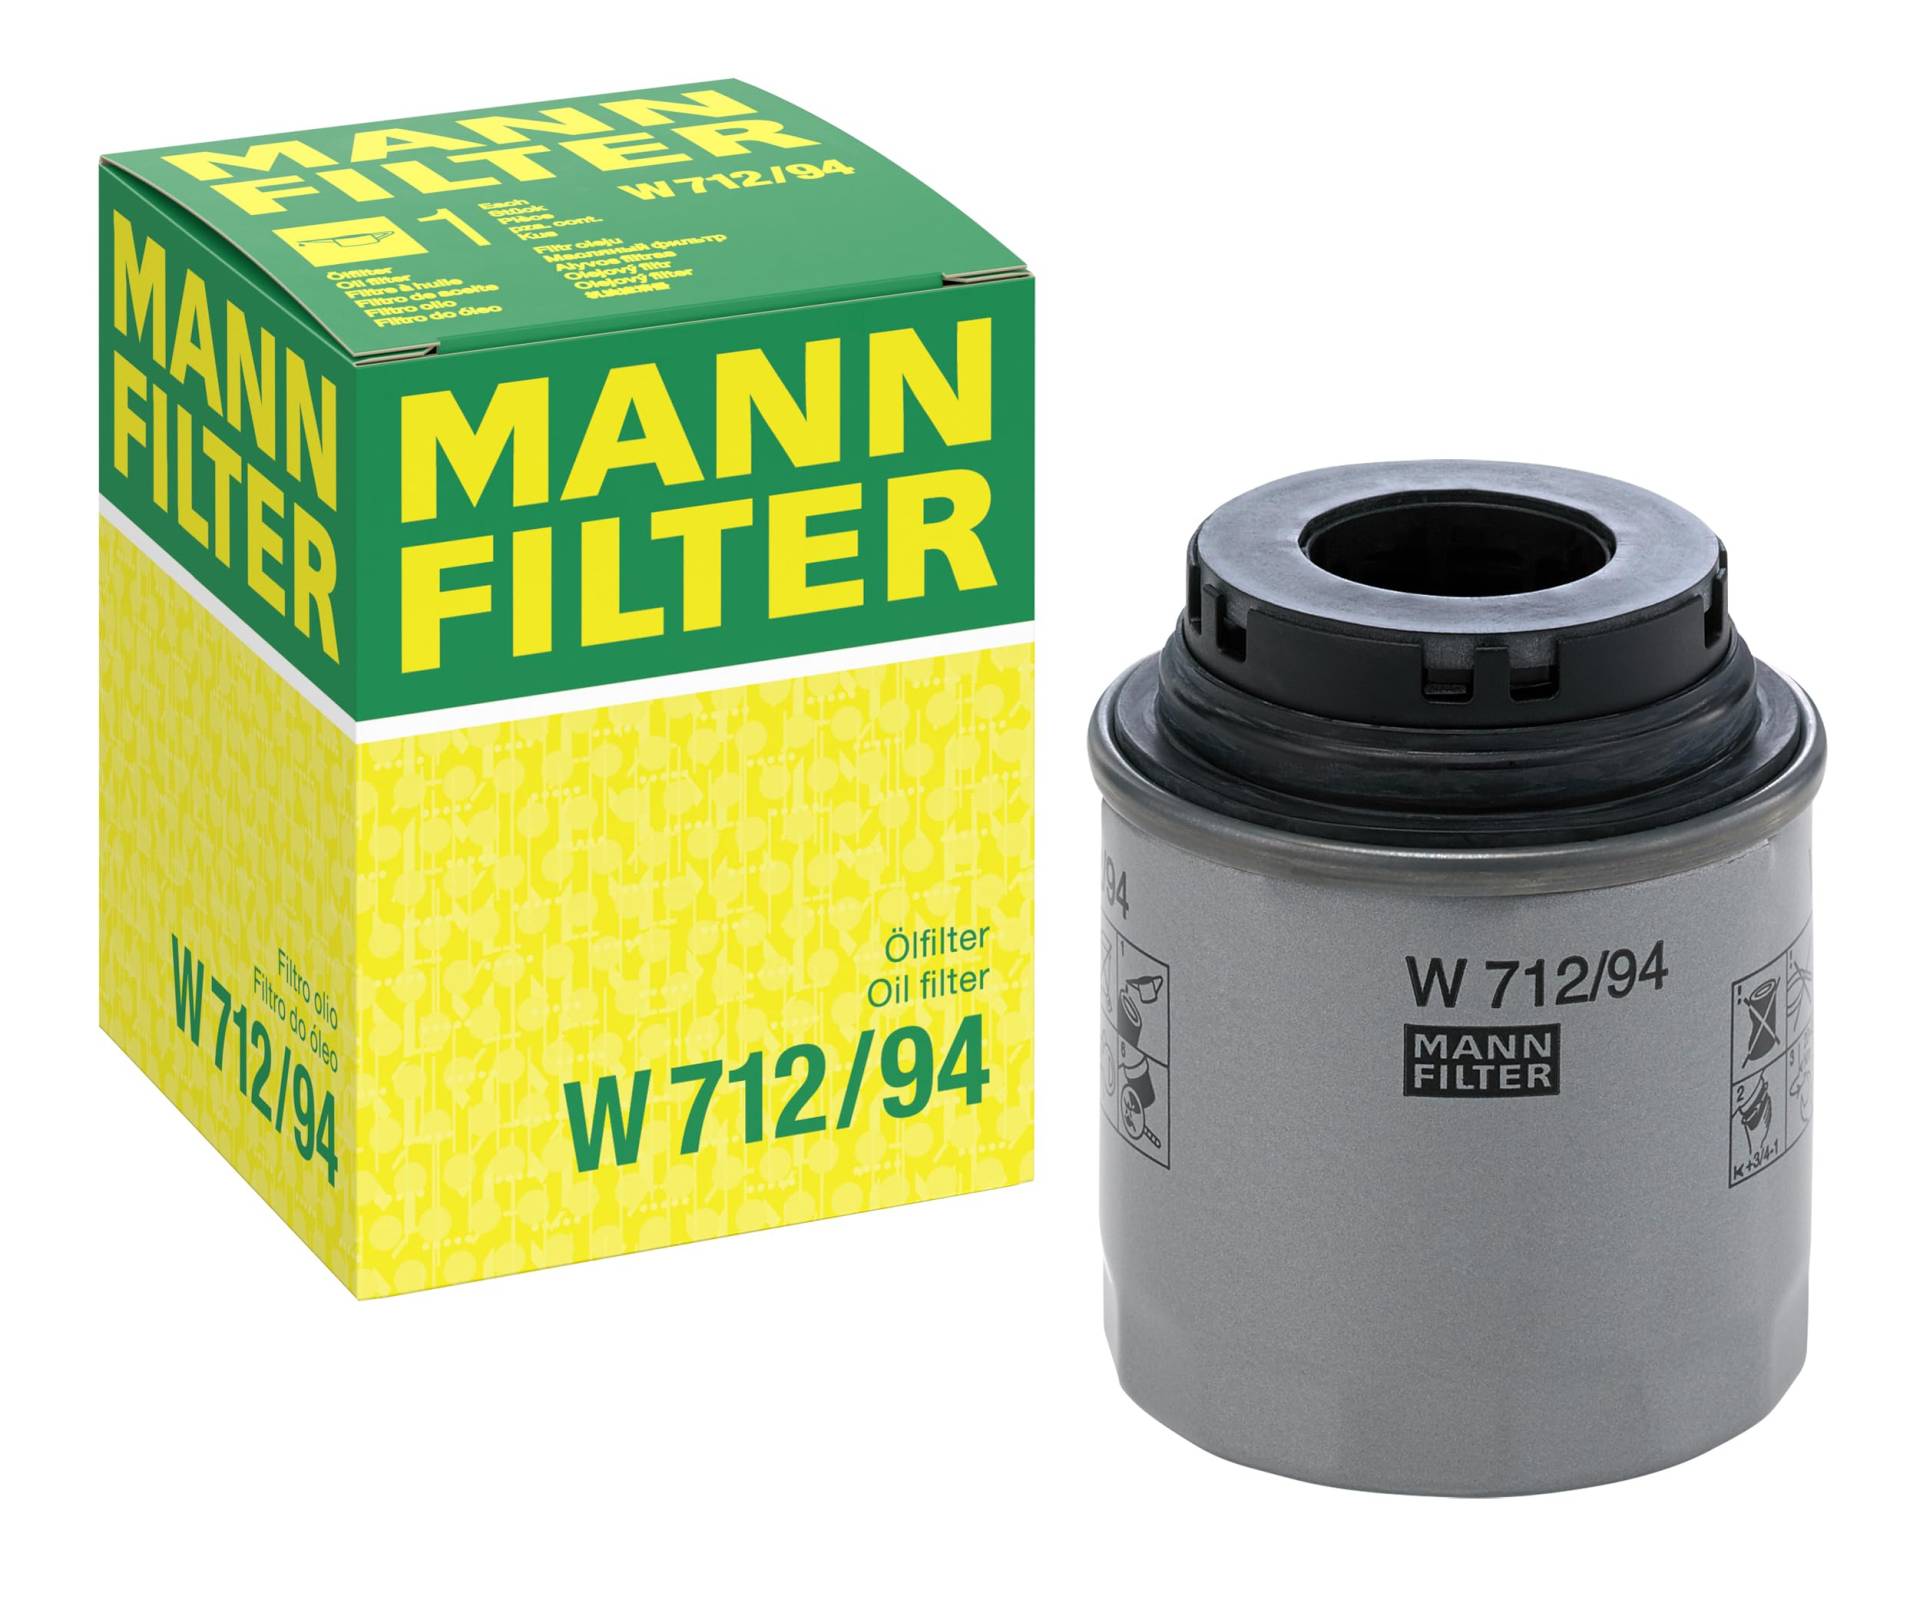 MANN-FILTER W 712/94 Ölfilter – Für PKW von MANN-FILTER